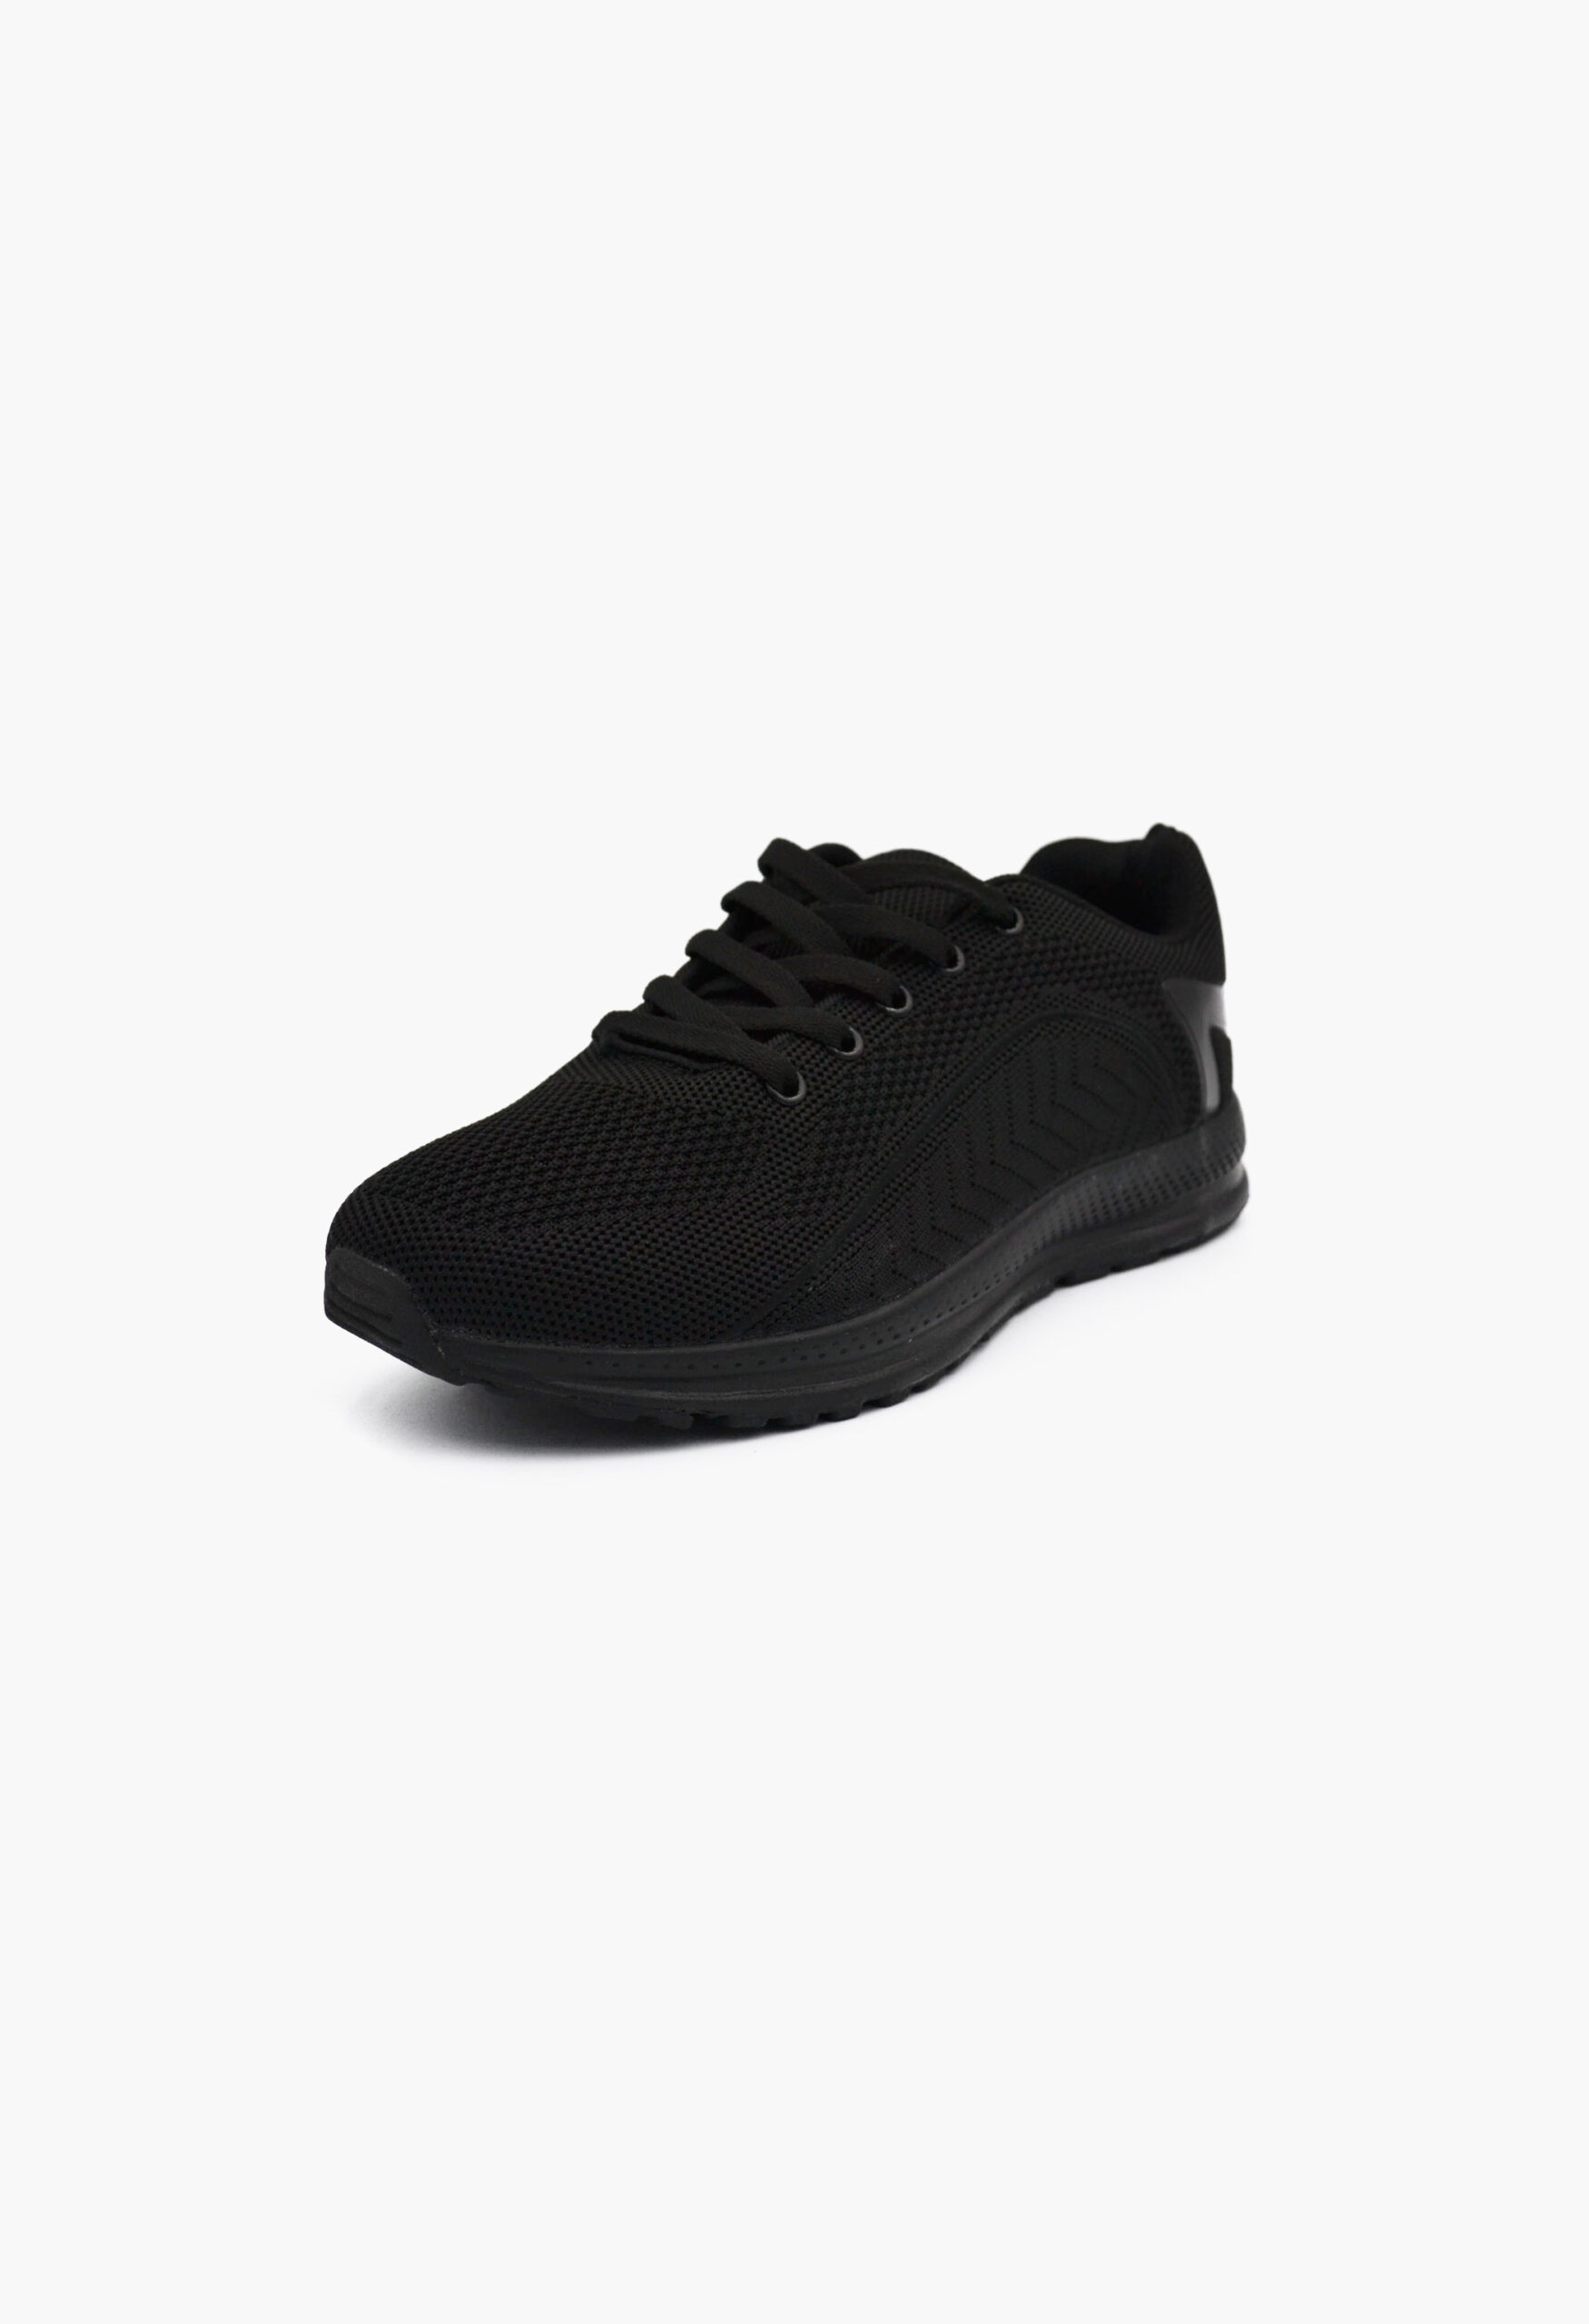 Αθλητικά Παπούτσια για Τρέξιμο Μαύρo / B-1212-6-black Γυναικεία Αθλητικά και Sneakers joya.gr